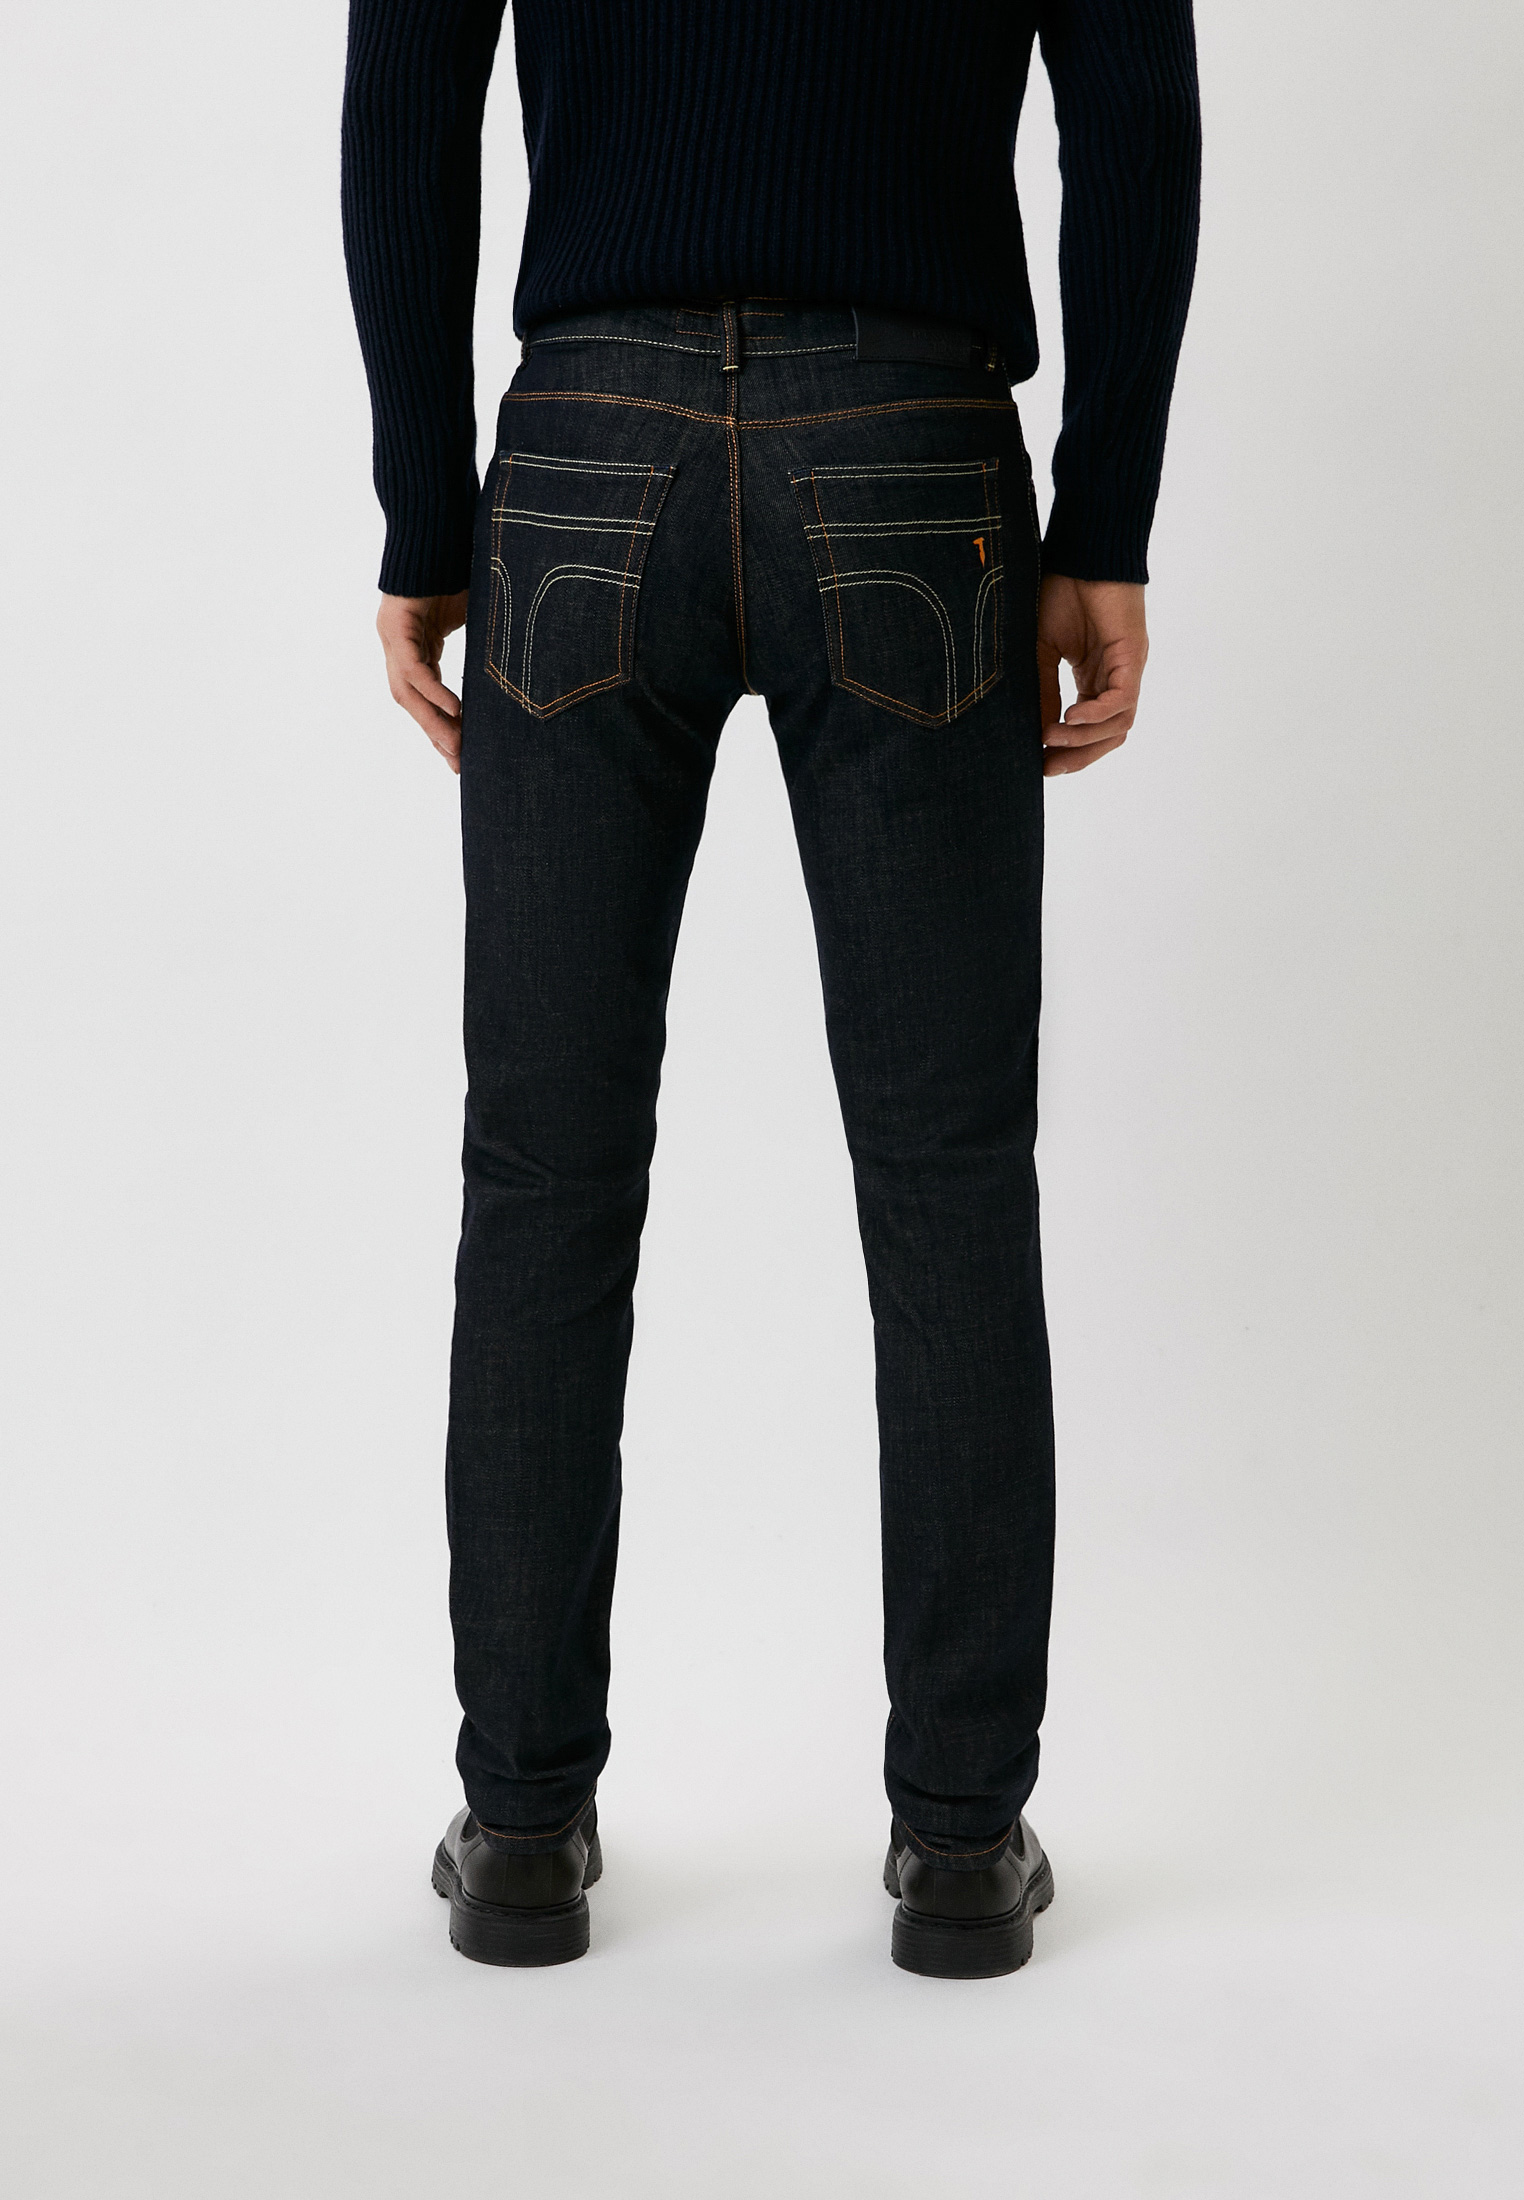 Мужские зауженные джинсы Trussardi (Труссарди) 52J00000-1T003125-C-001: изображение 3